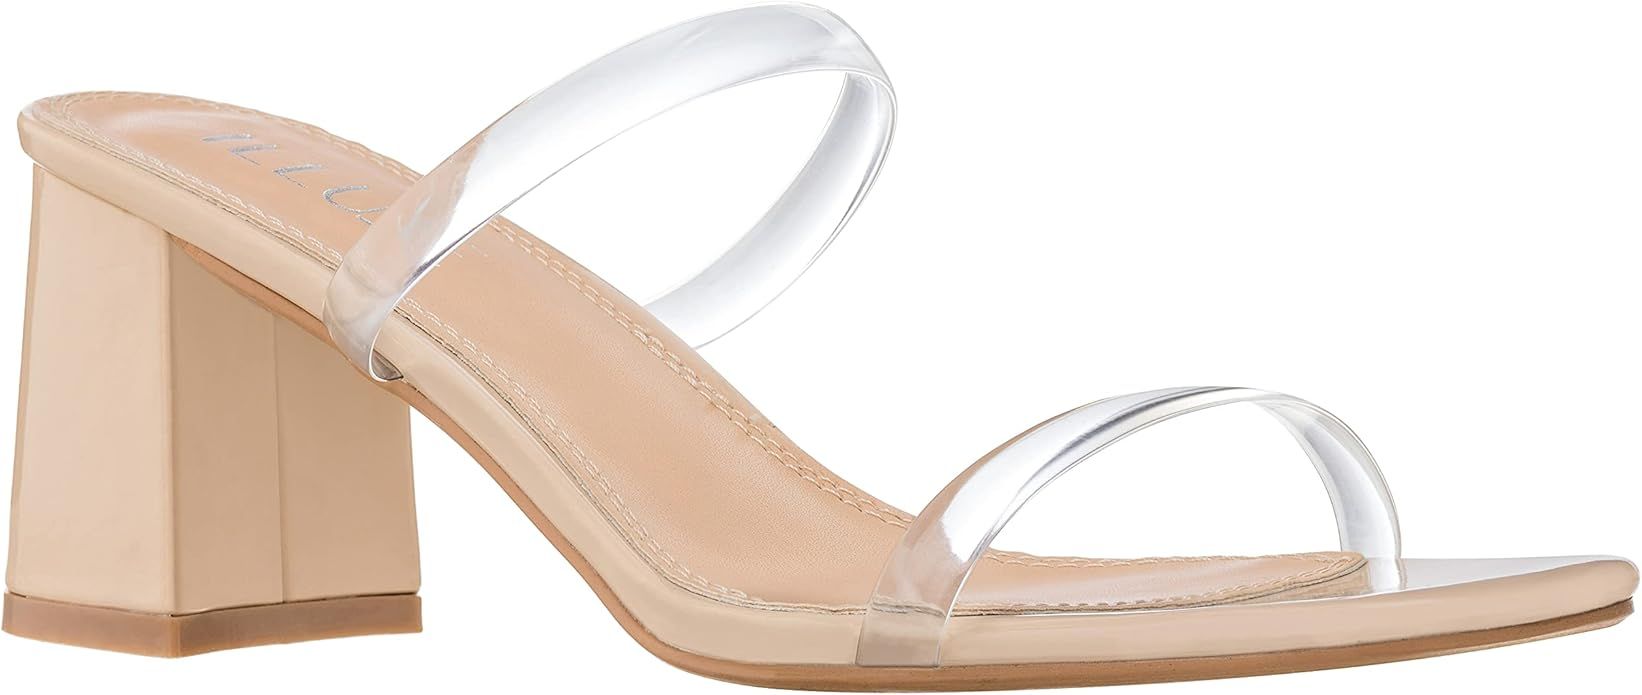 Amazon.com | ILLUDE Women’s Block Heel Double Band Square Toe Heeled Sandal Slip On Shoes (8, C... | Amazon (US)